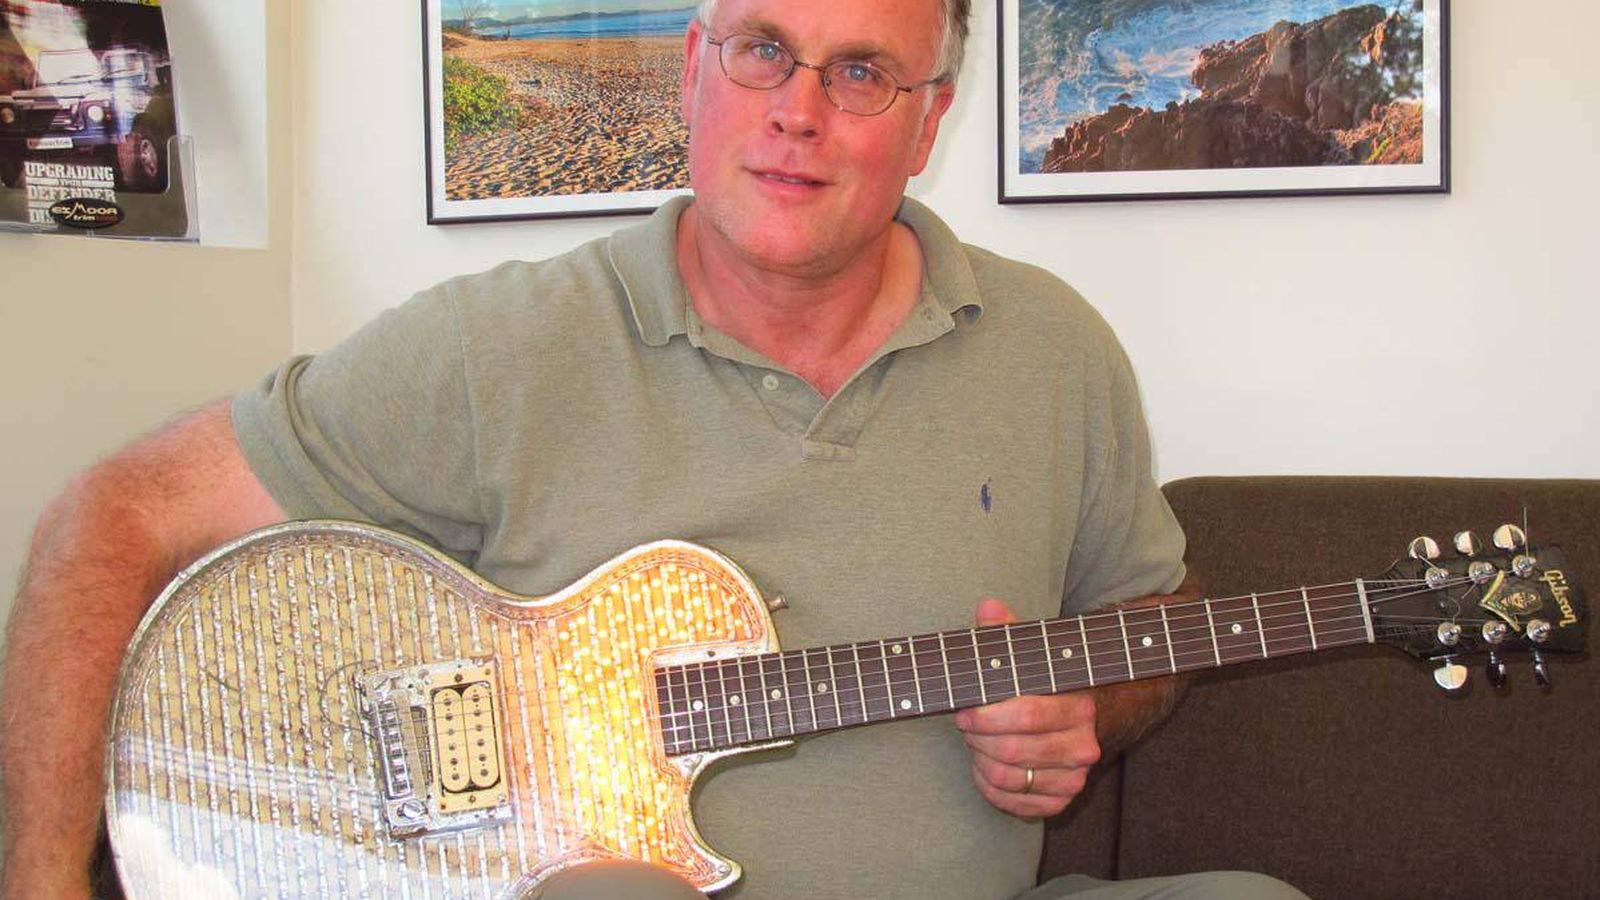 Foto: Robison en 2015 sujetando una de las guitarras restauradas que utilizó Kiss a finales de los 70. (Twitter)